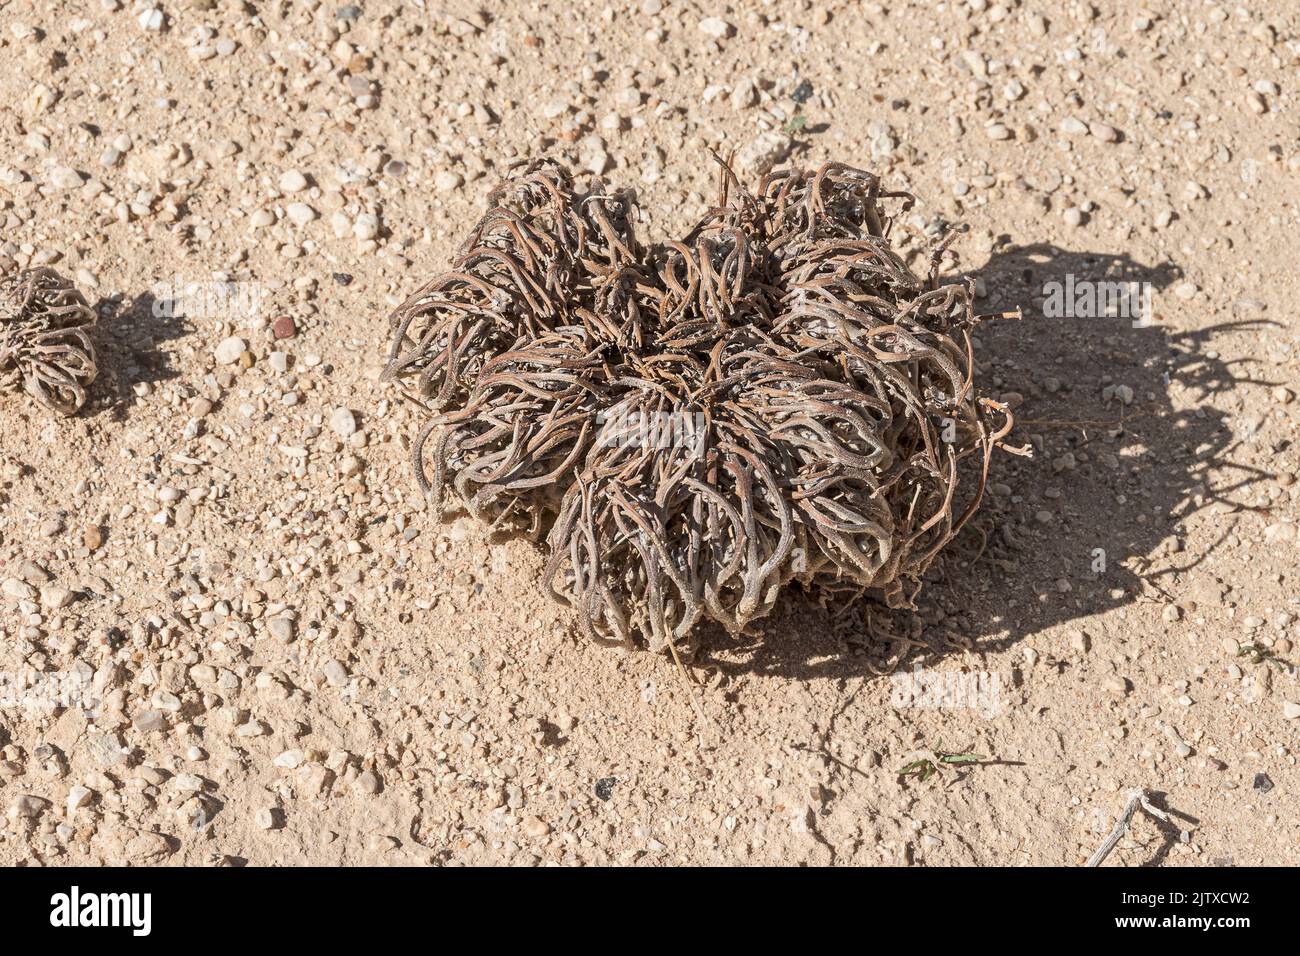 Dead Looking True Rose di Gerico Anastatica hierochuntica pianta nello stato dormiente in un habitat estremamente arido nel deserto di Arava in Israele Foto Stock